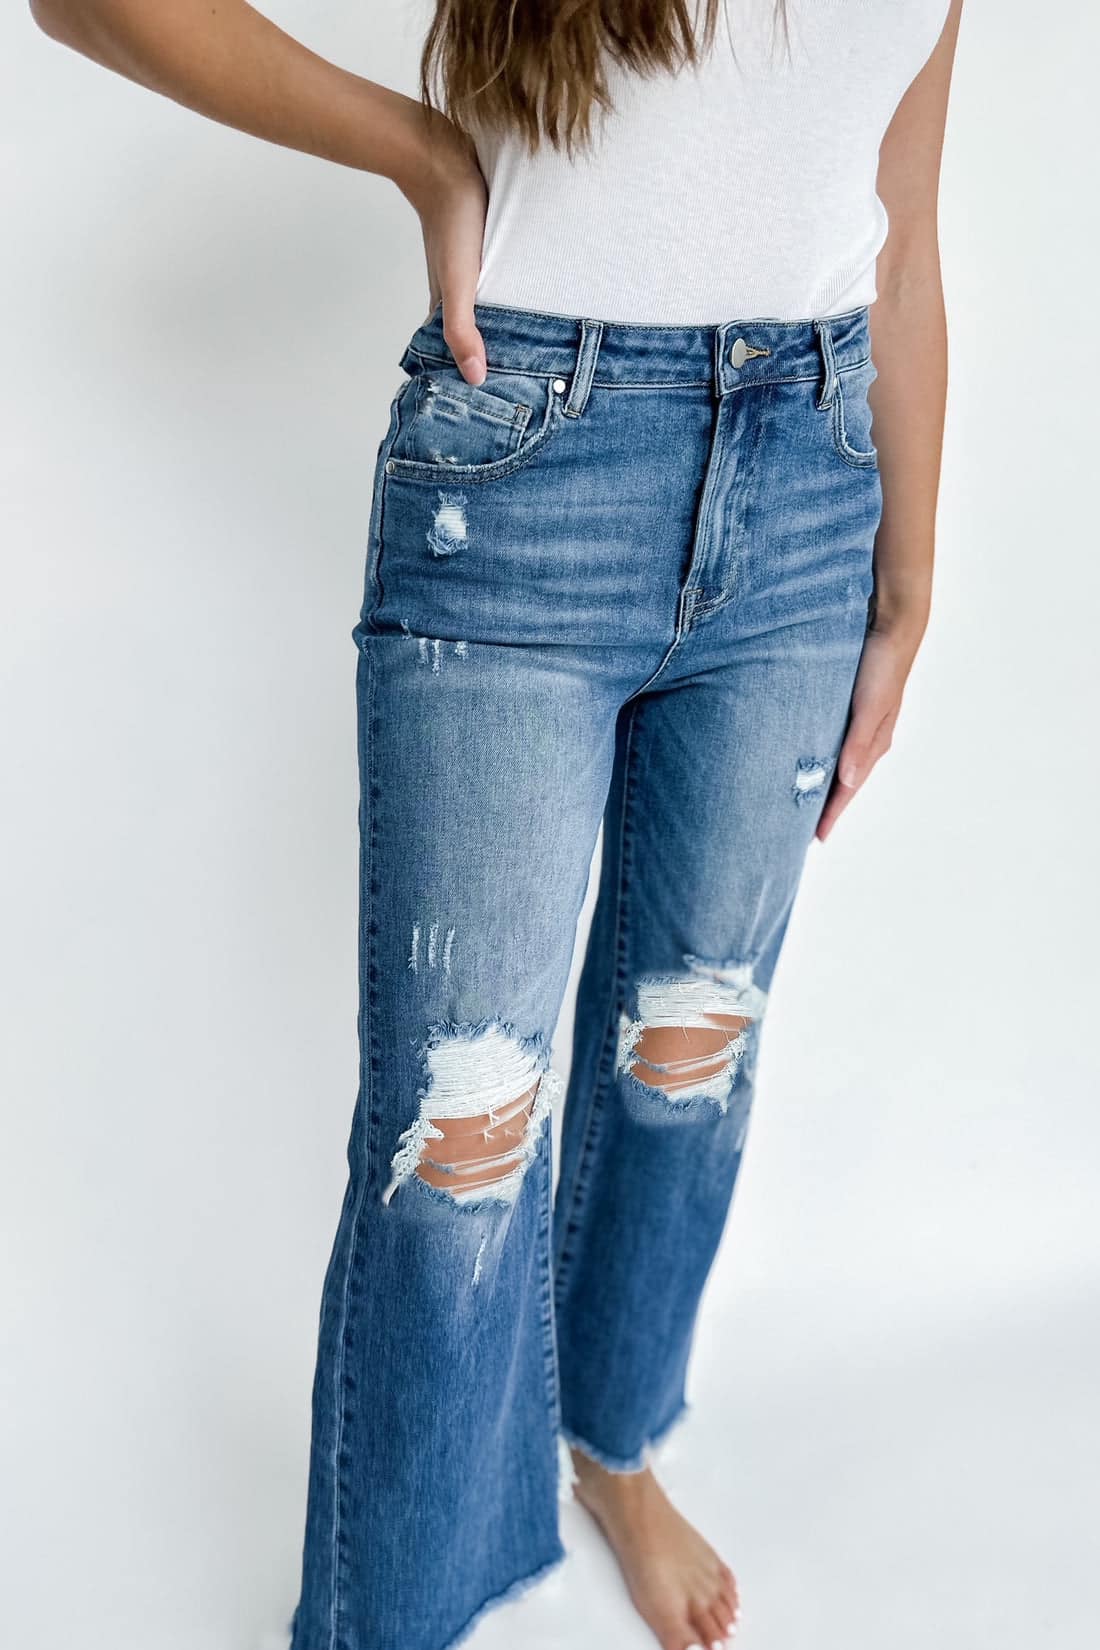 Blakeley Distressed Dark Wash Jeans: Plus